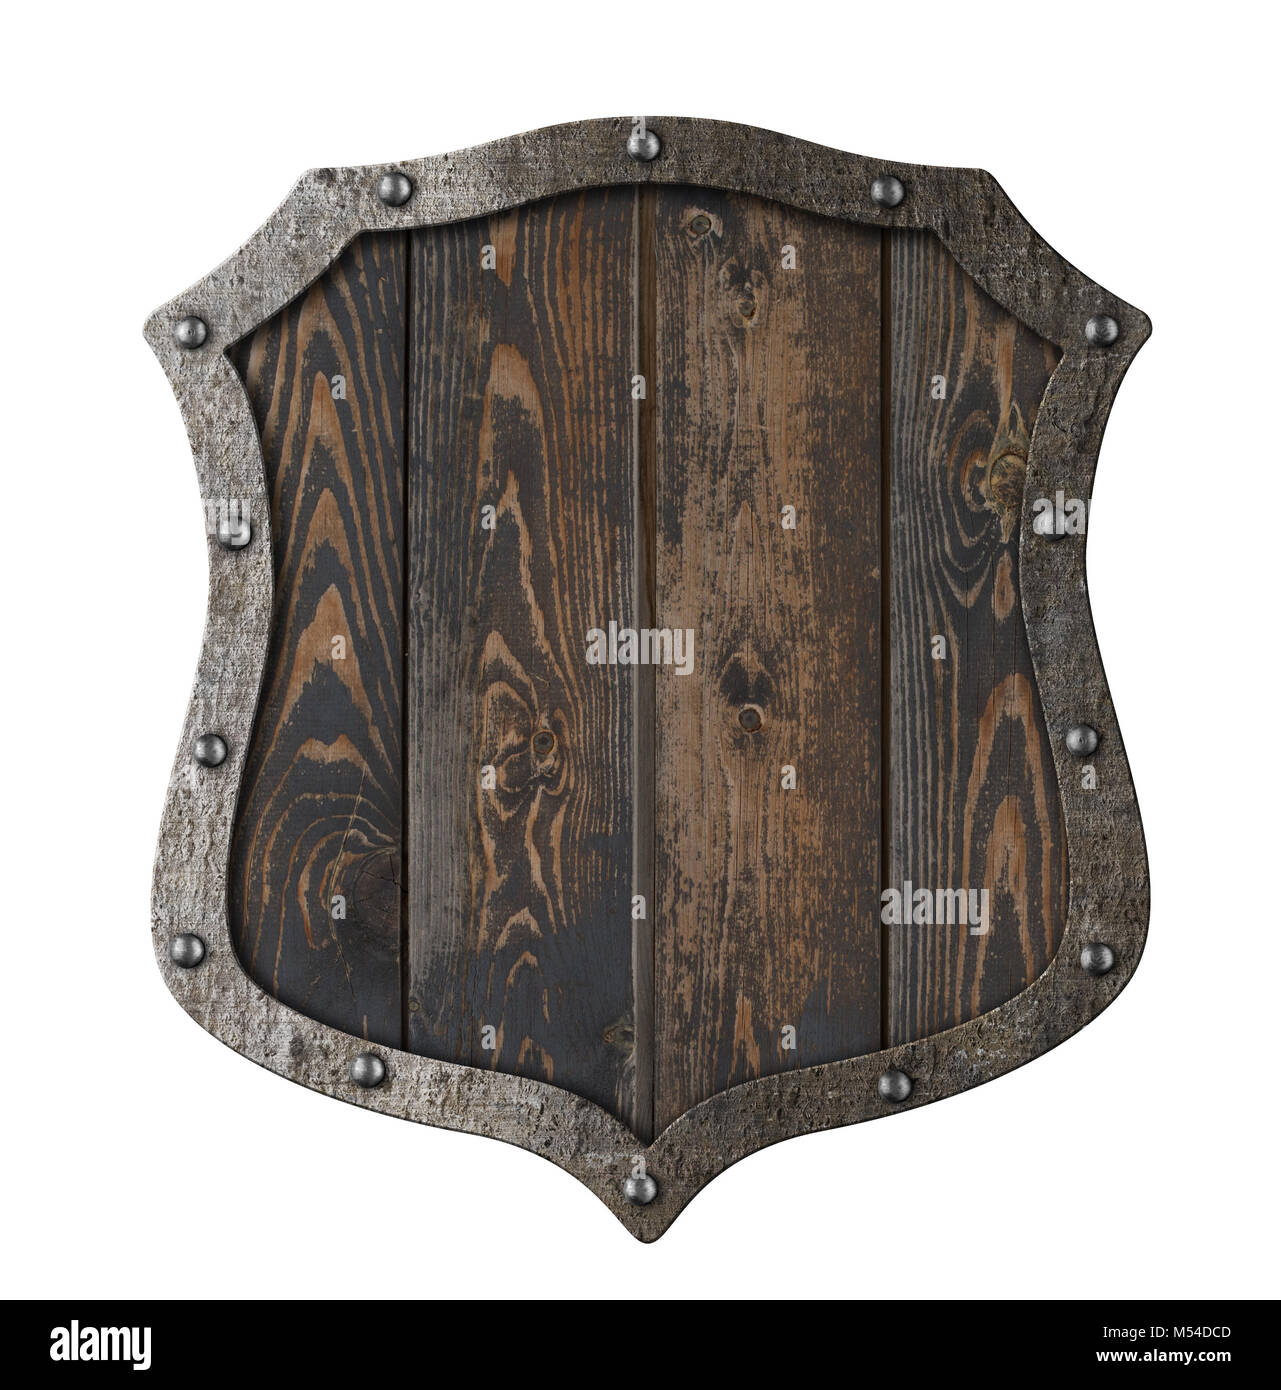 Holz- mittelalterliche heraldischen Schild isoliert 3 Abbildung d Stockfoto